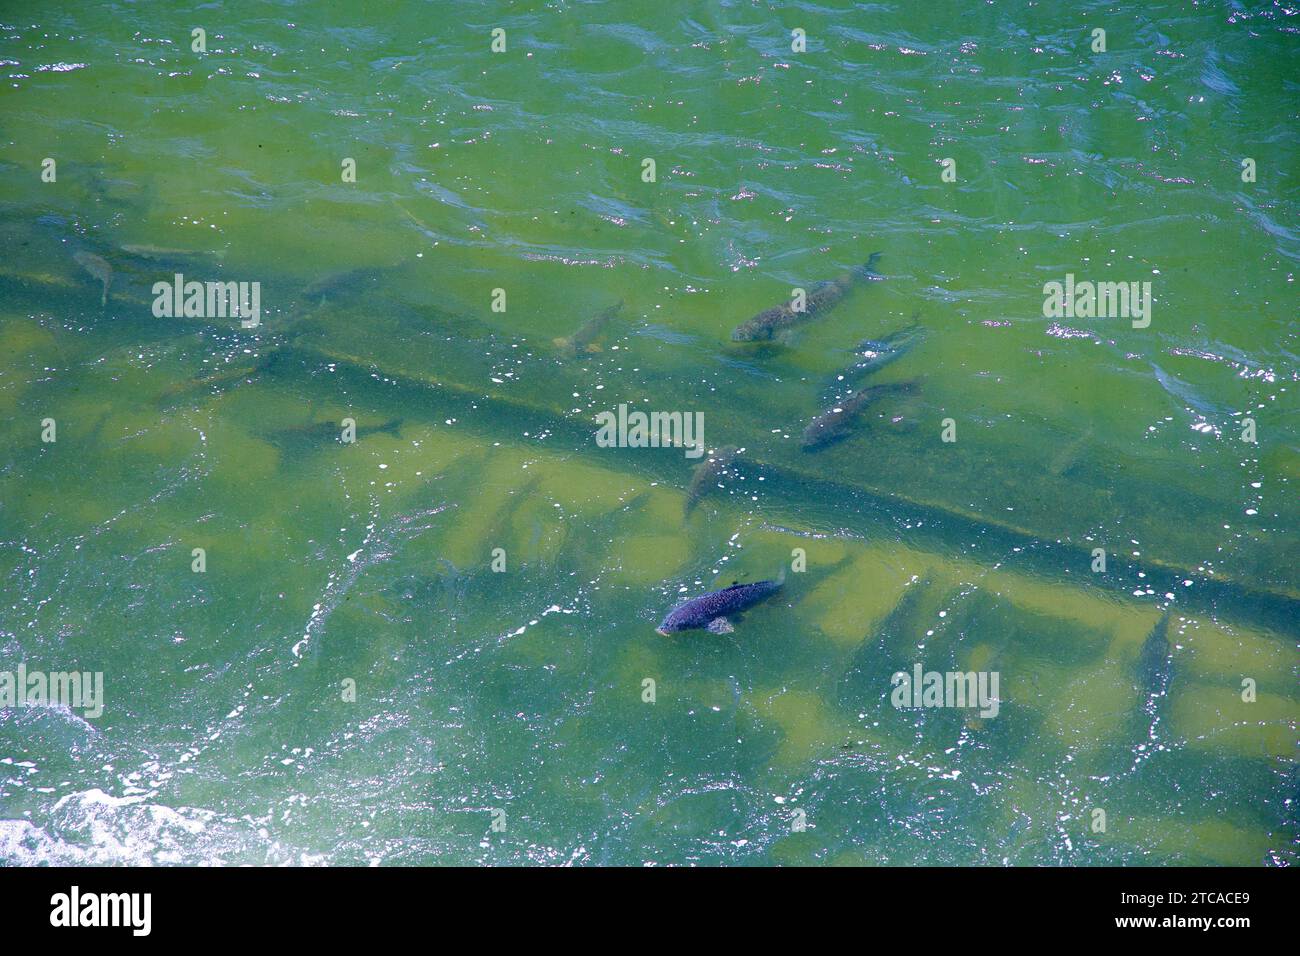 Scorci di pesci vicino alla superficie del torrente Jungnang creano una scena tranquilla e naturale, mettendo in risalto la fiorente vita acquatica in questa serena acqua Foto Stock